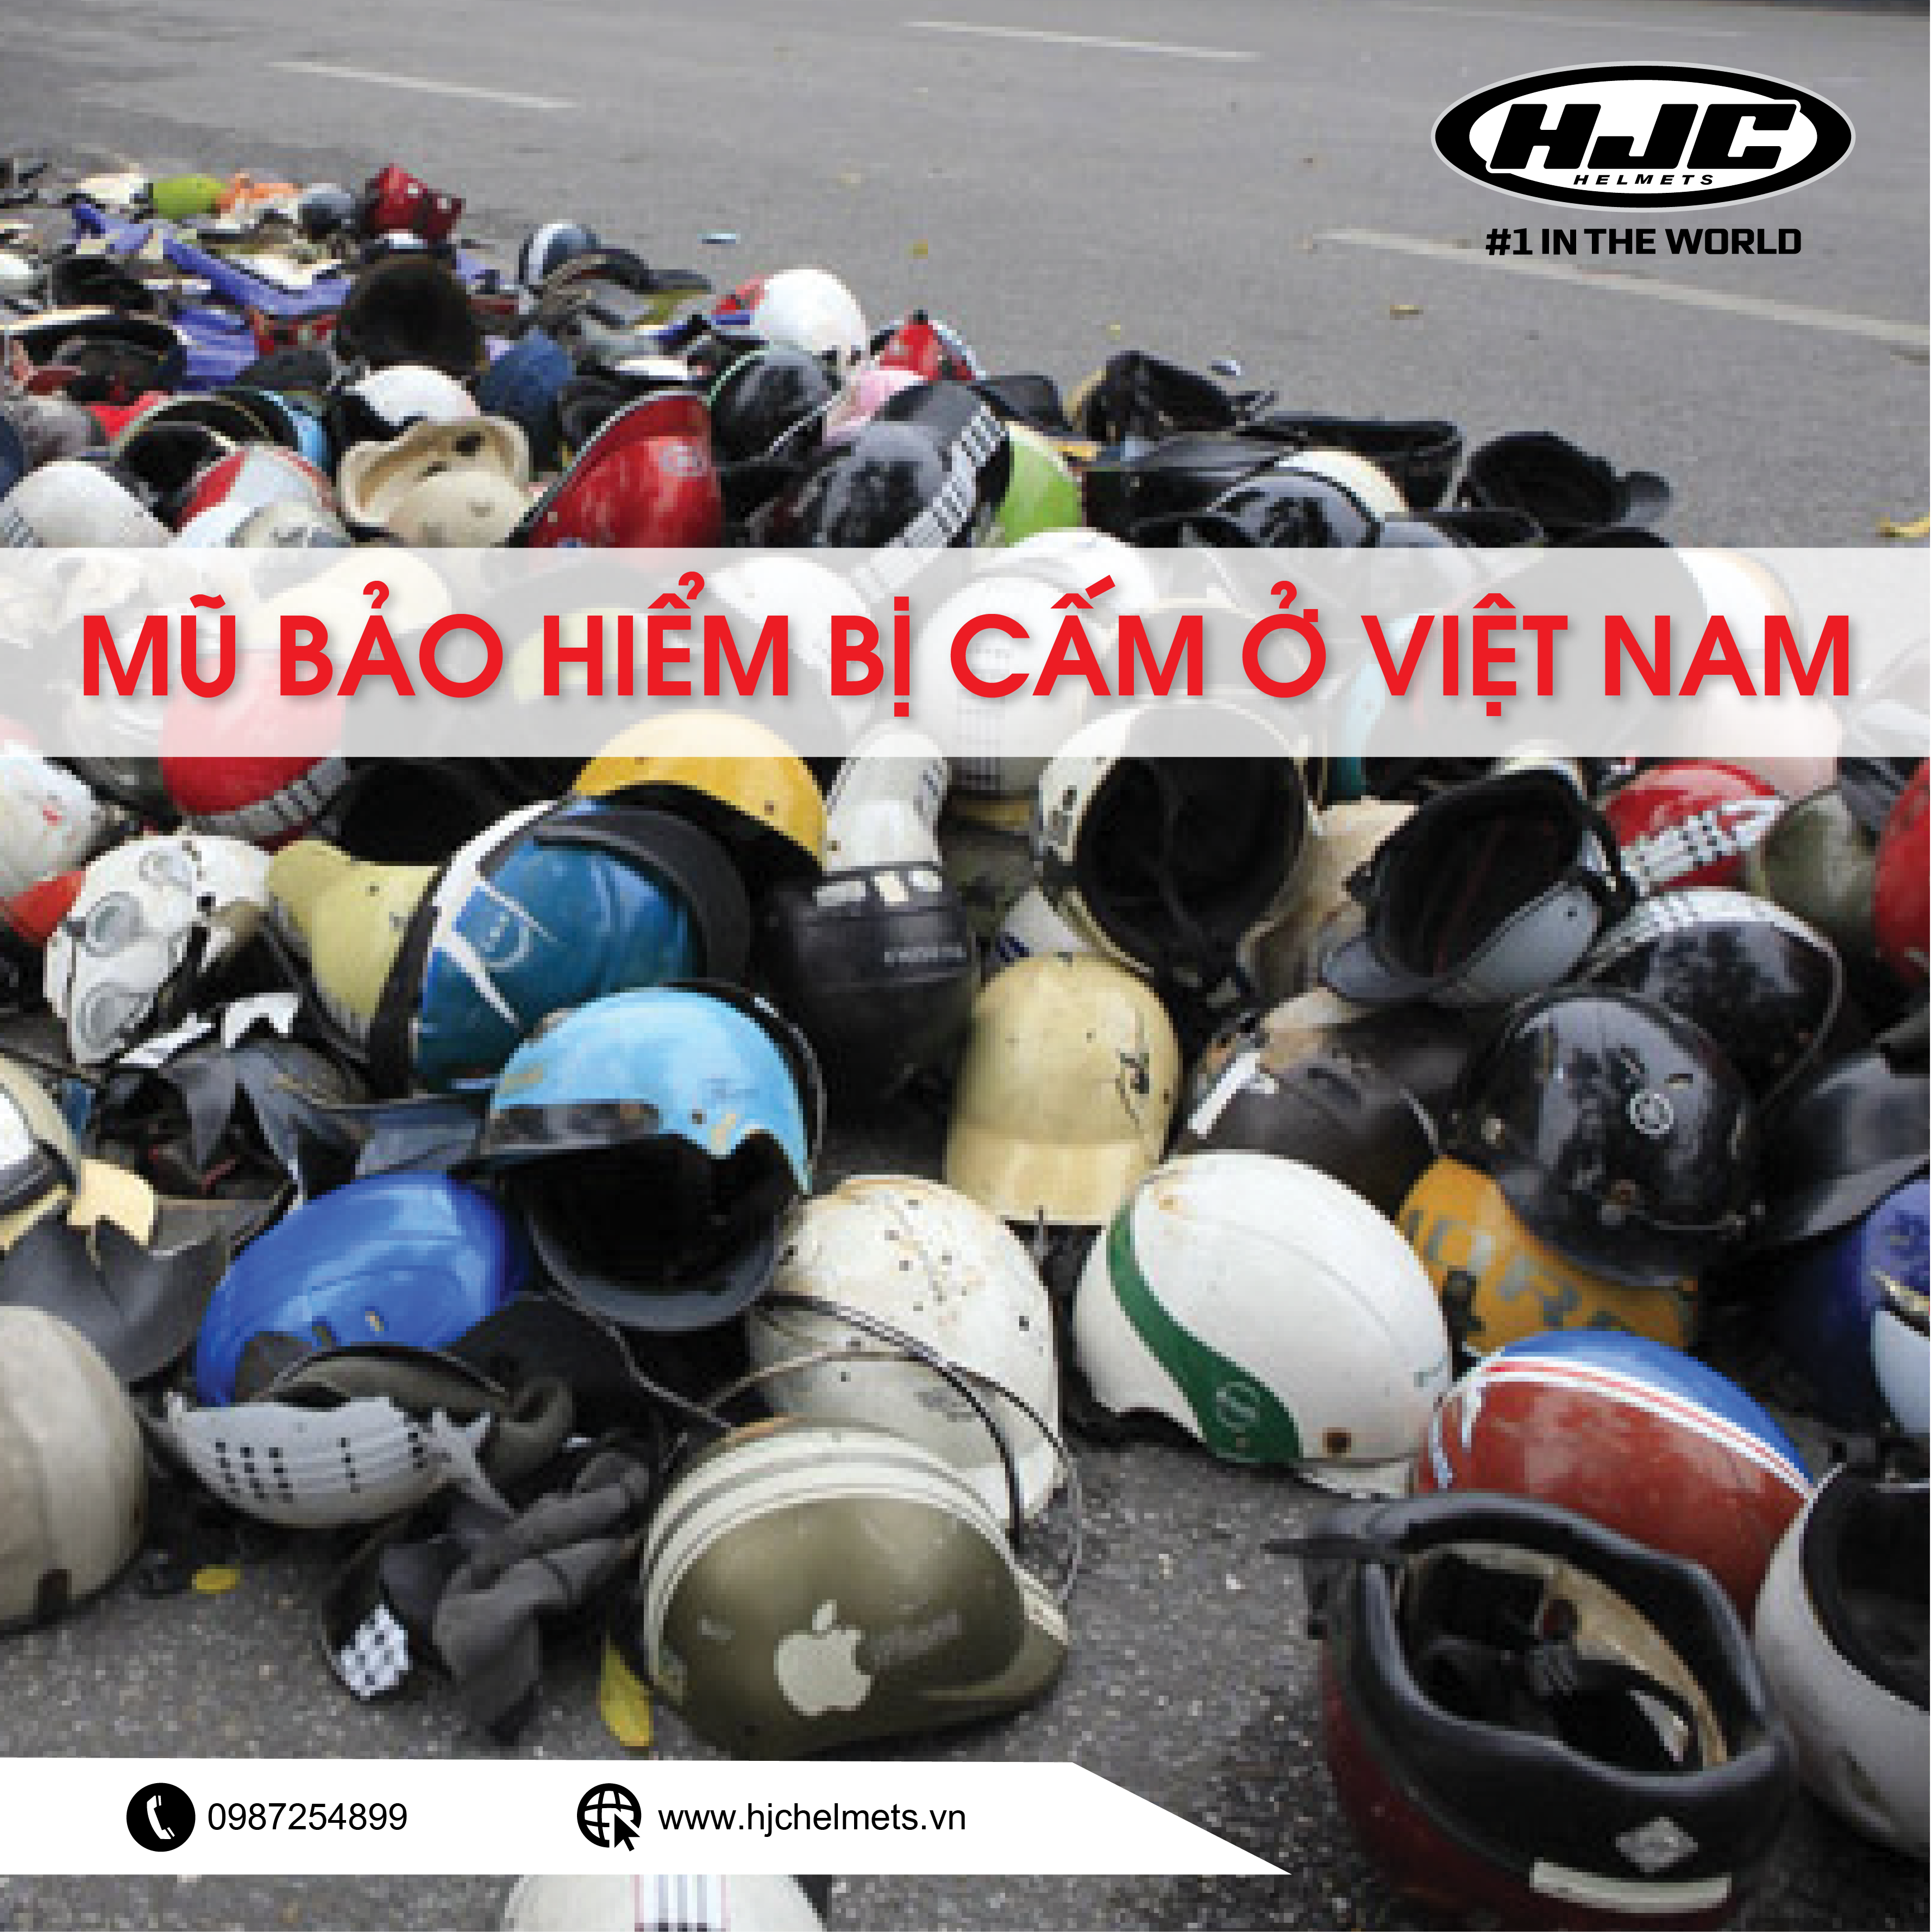 Các loại mũ bảo hiểm bị cấm ở Việt Nam